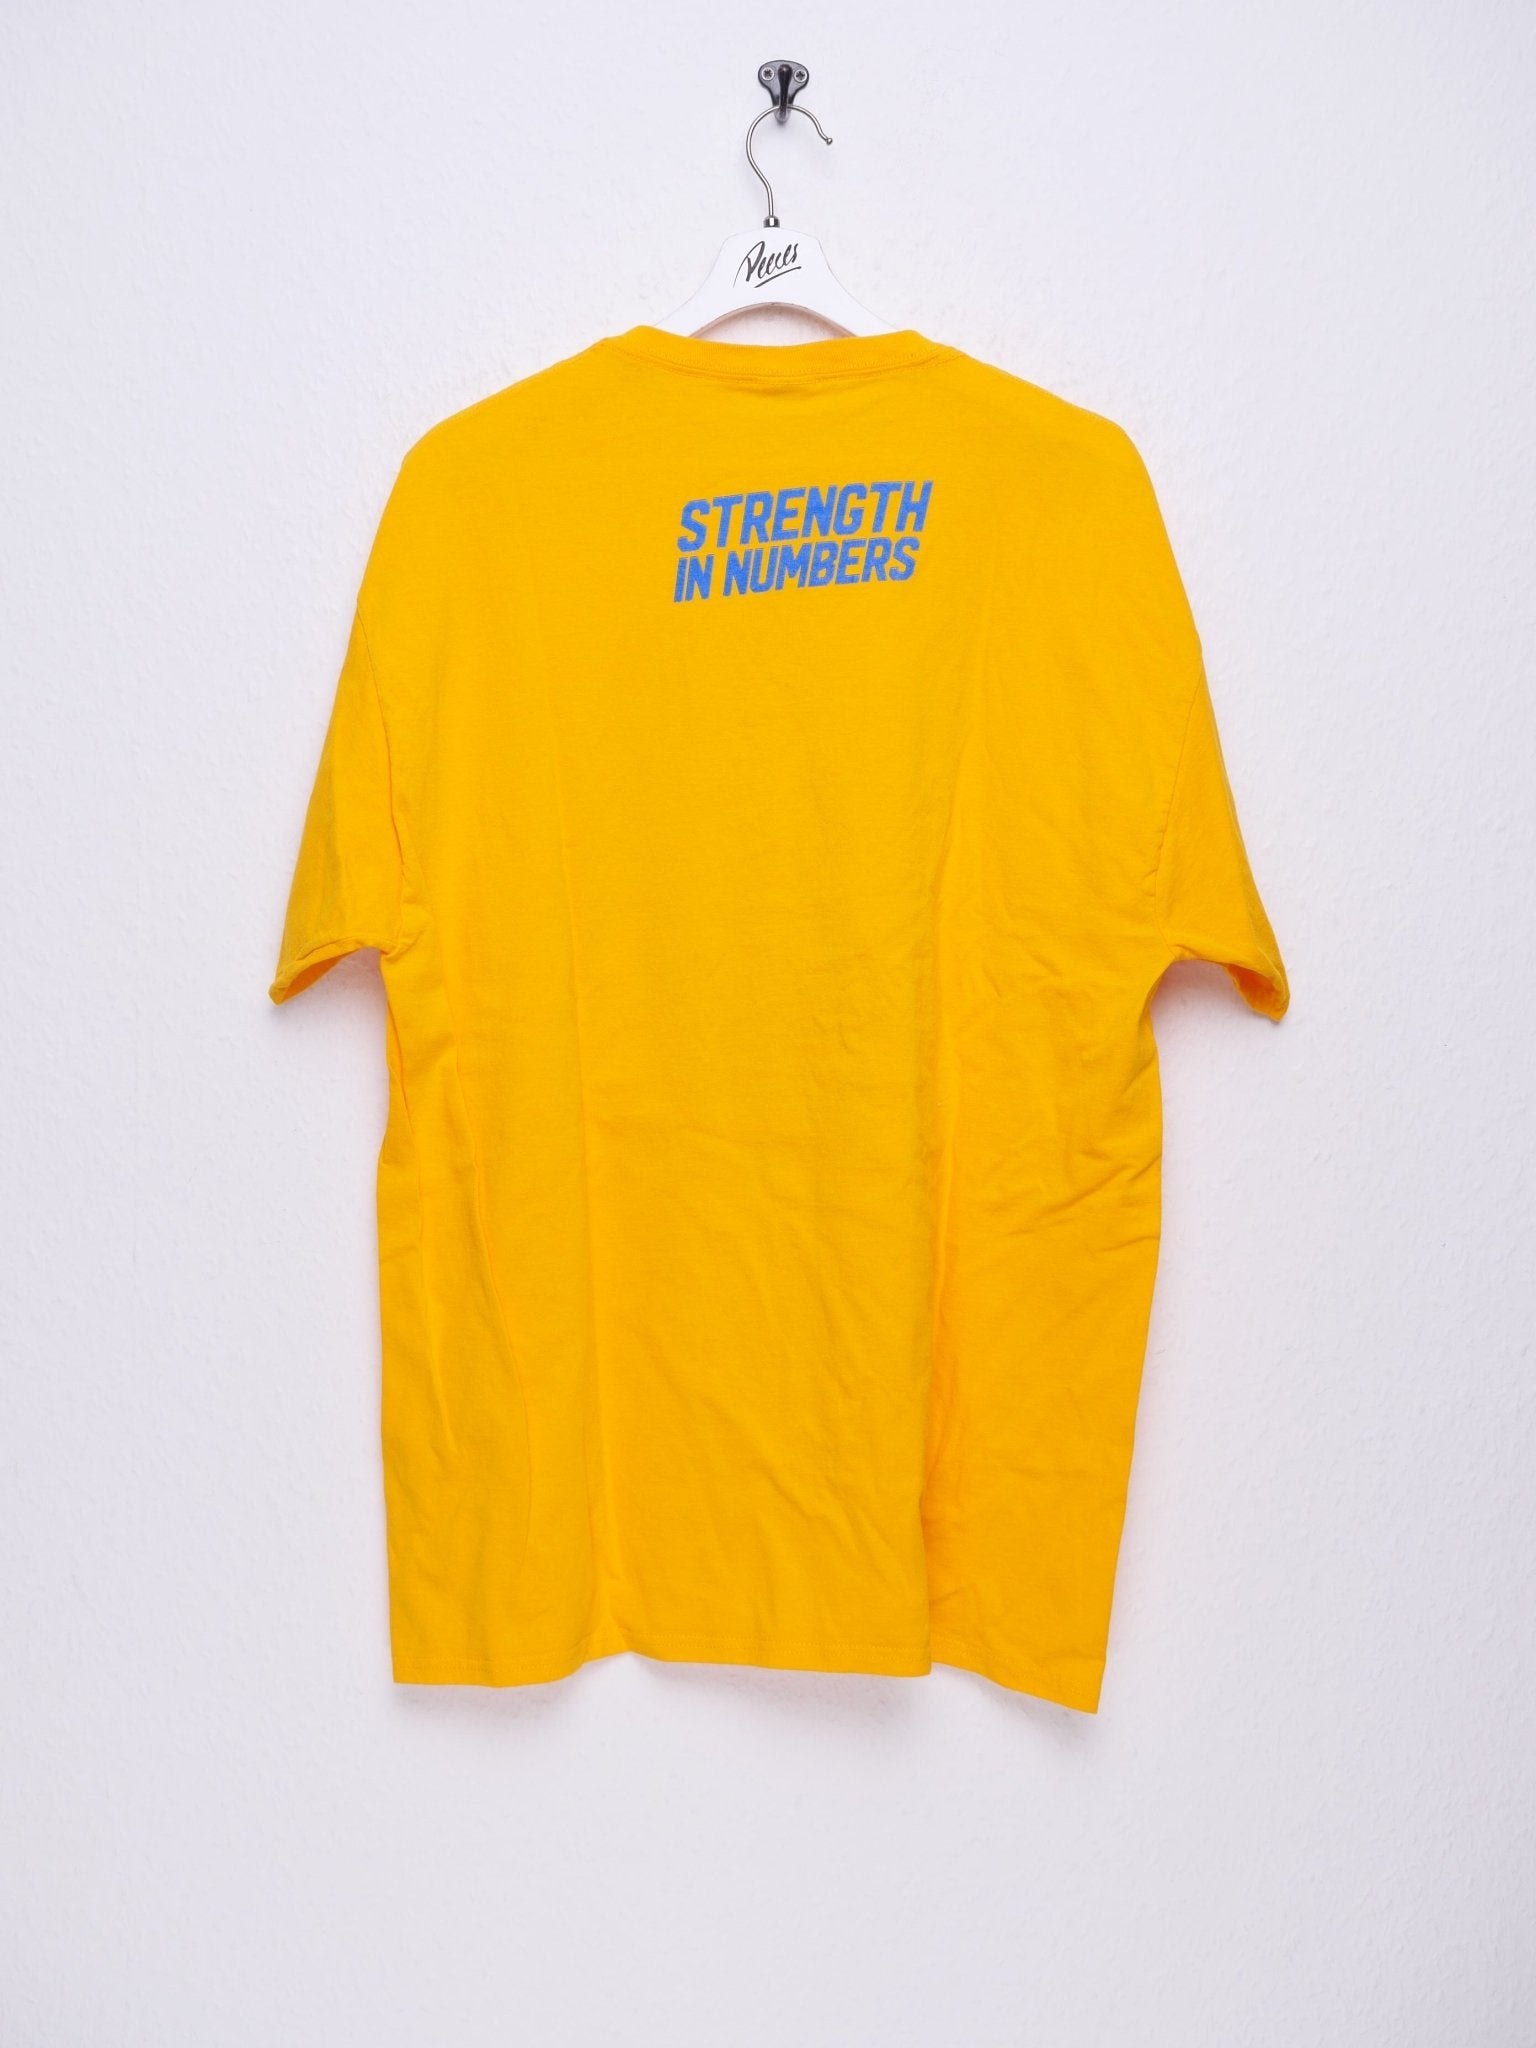 printed Golden State Worriors Merch Shirt - Peeces